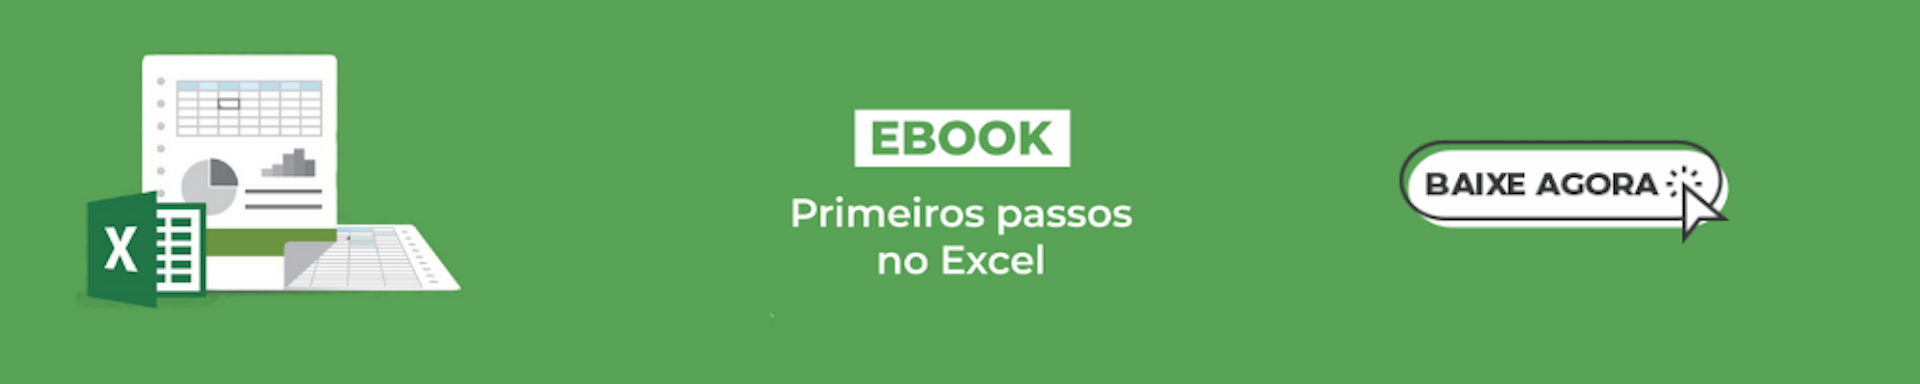 E-book Primeiros Passos no Excel